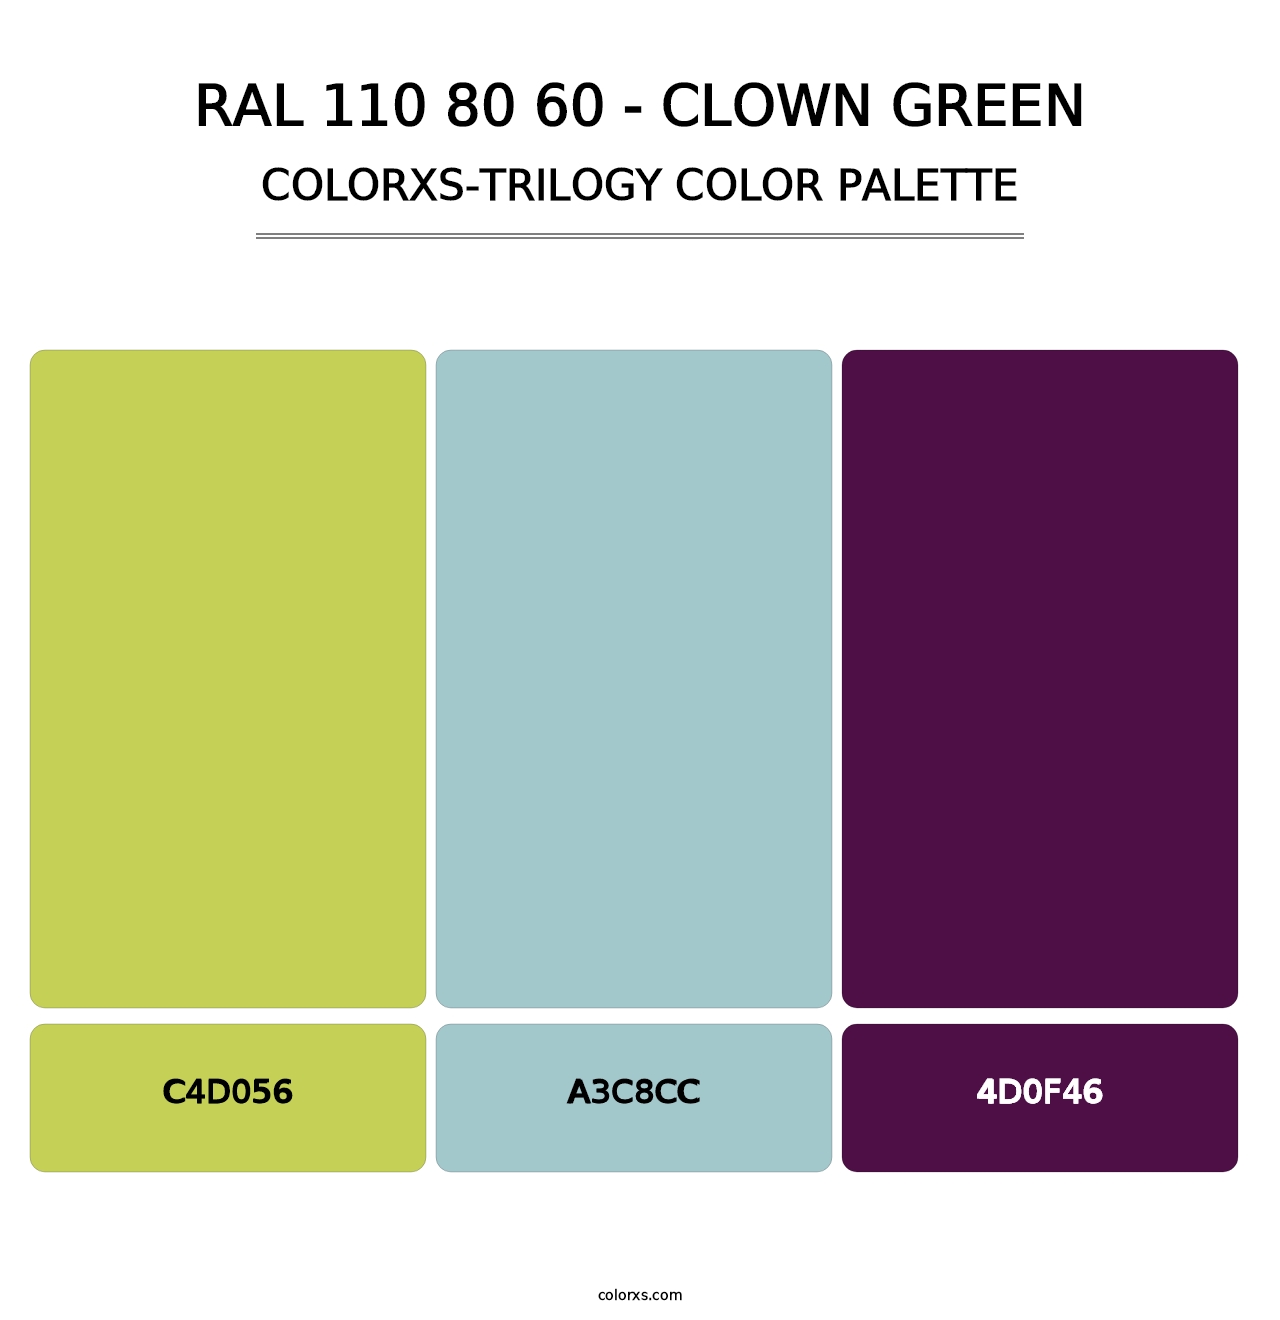 RAL 110 80 60 - Clown Green - Colorxs Trilogy Palette